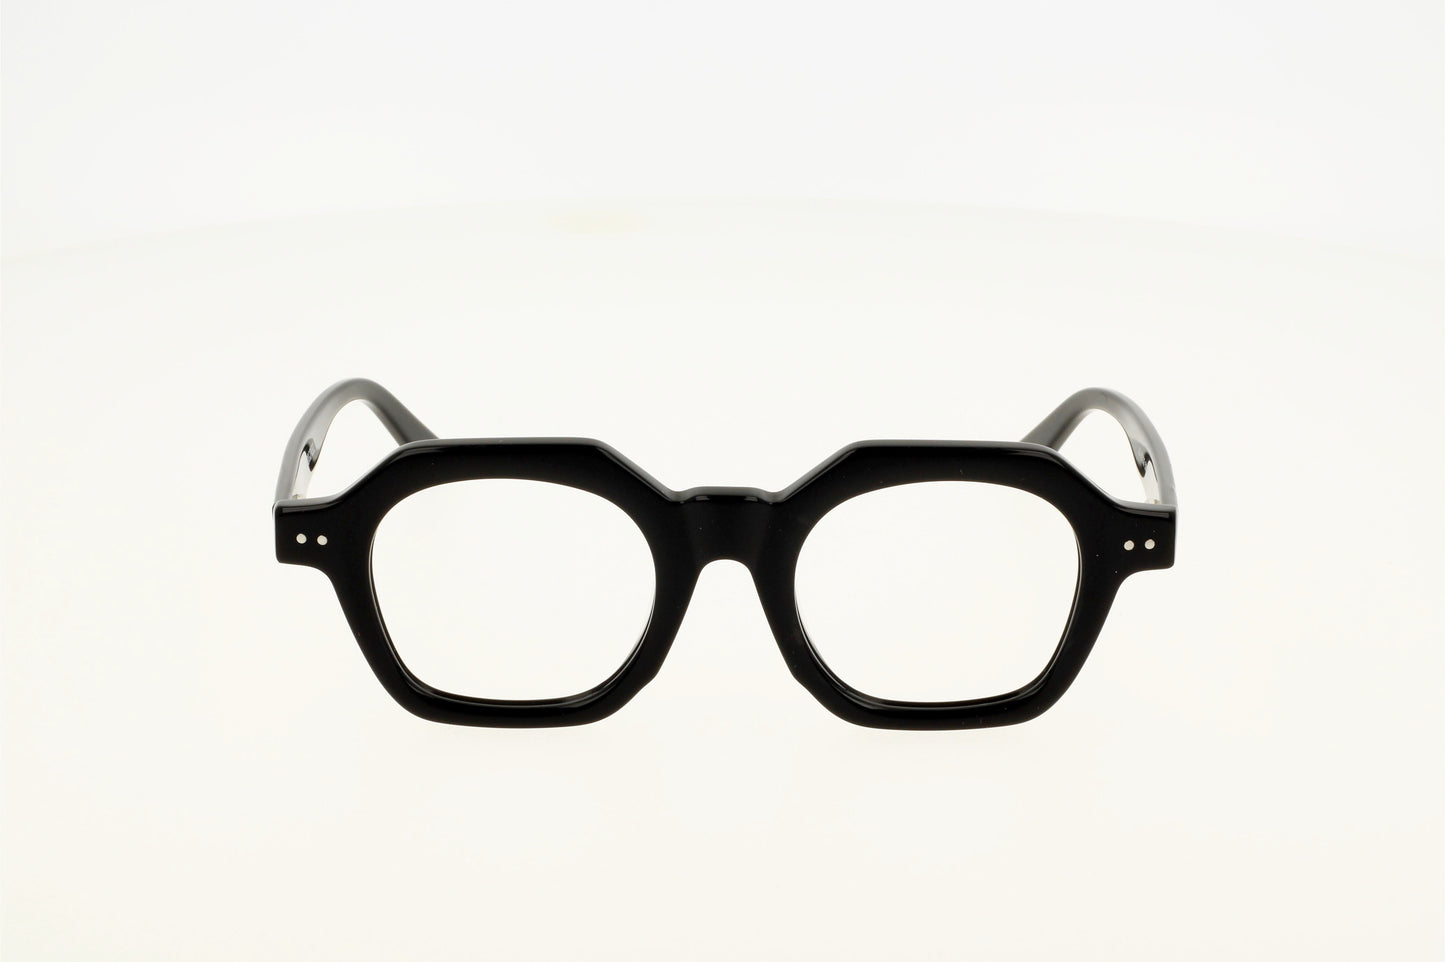 Lunette de vue en acétate noir épais ou translucide, lunette pour femme tendance et chic.